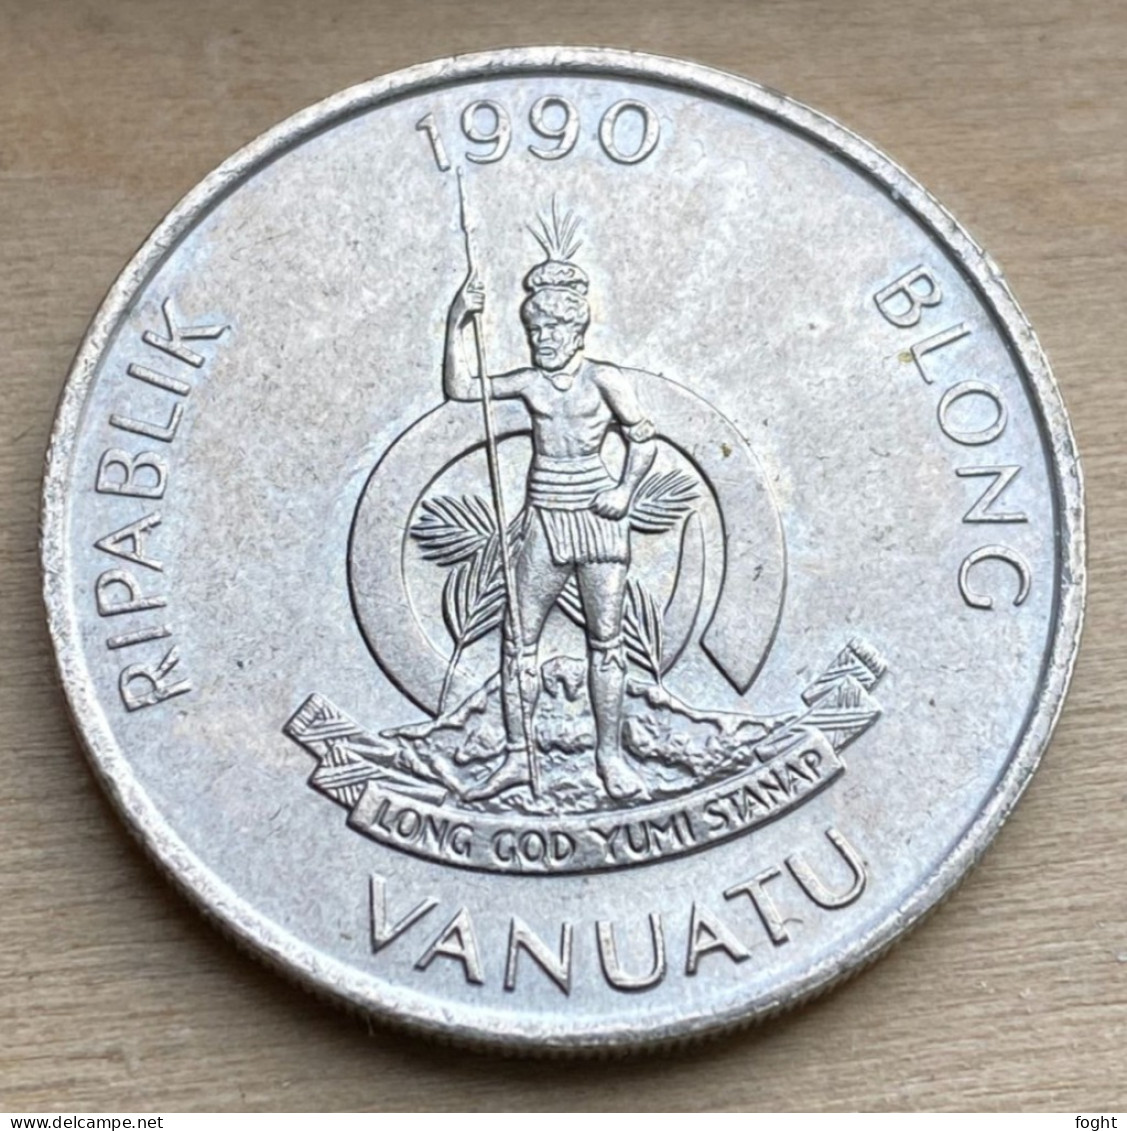 1990 Vanuatu Standard Coin 20 Vatu,KM#7,7368K - Vanuatu